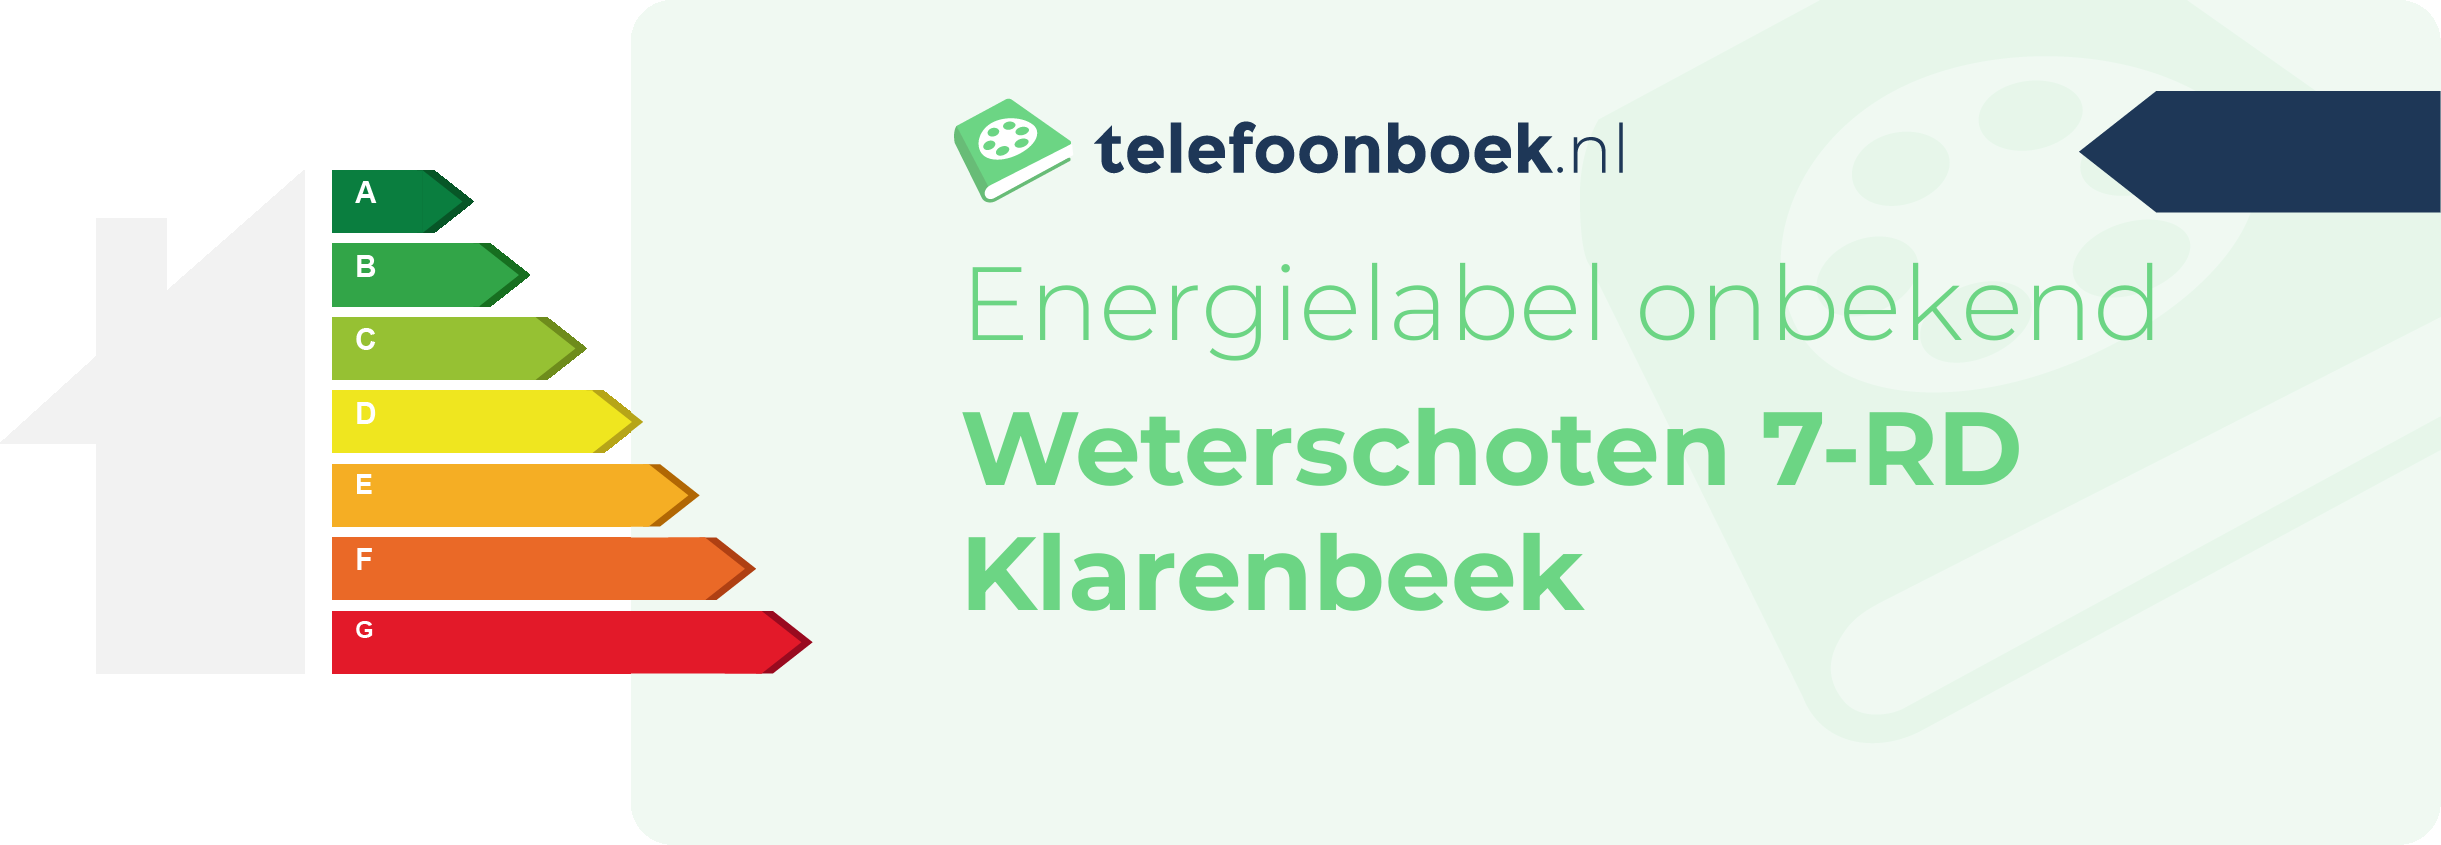 Energielabel Weterschoten 7-RD Klarenbeek